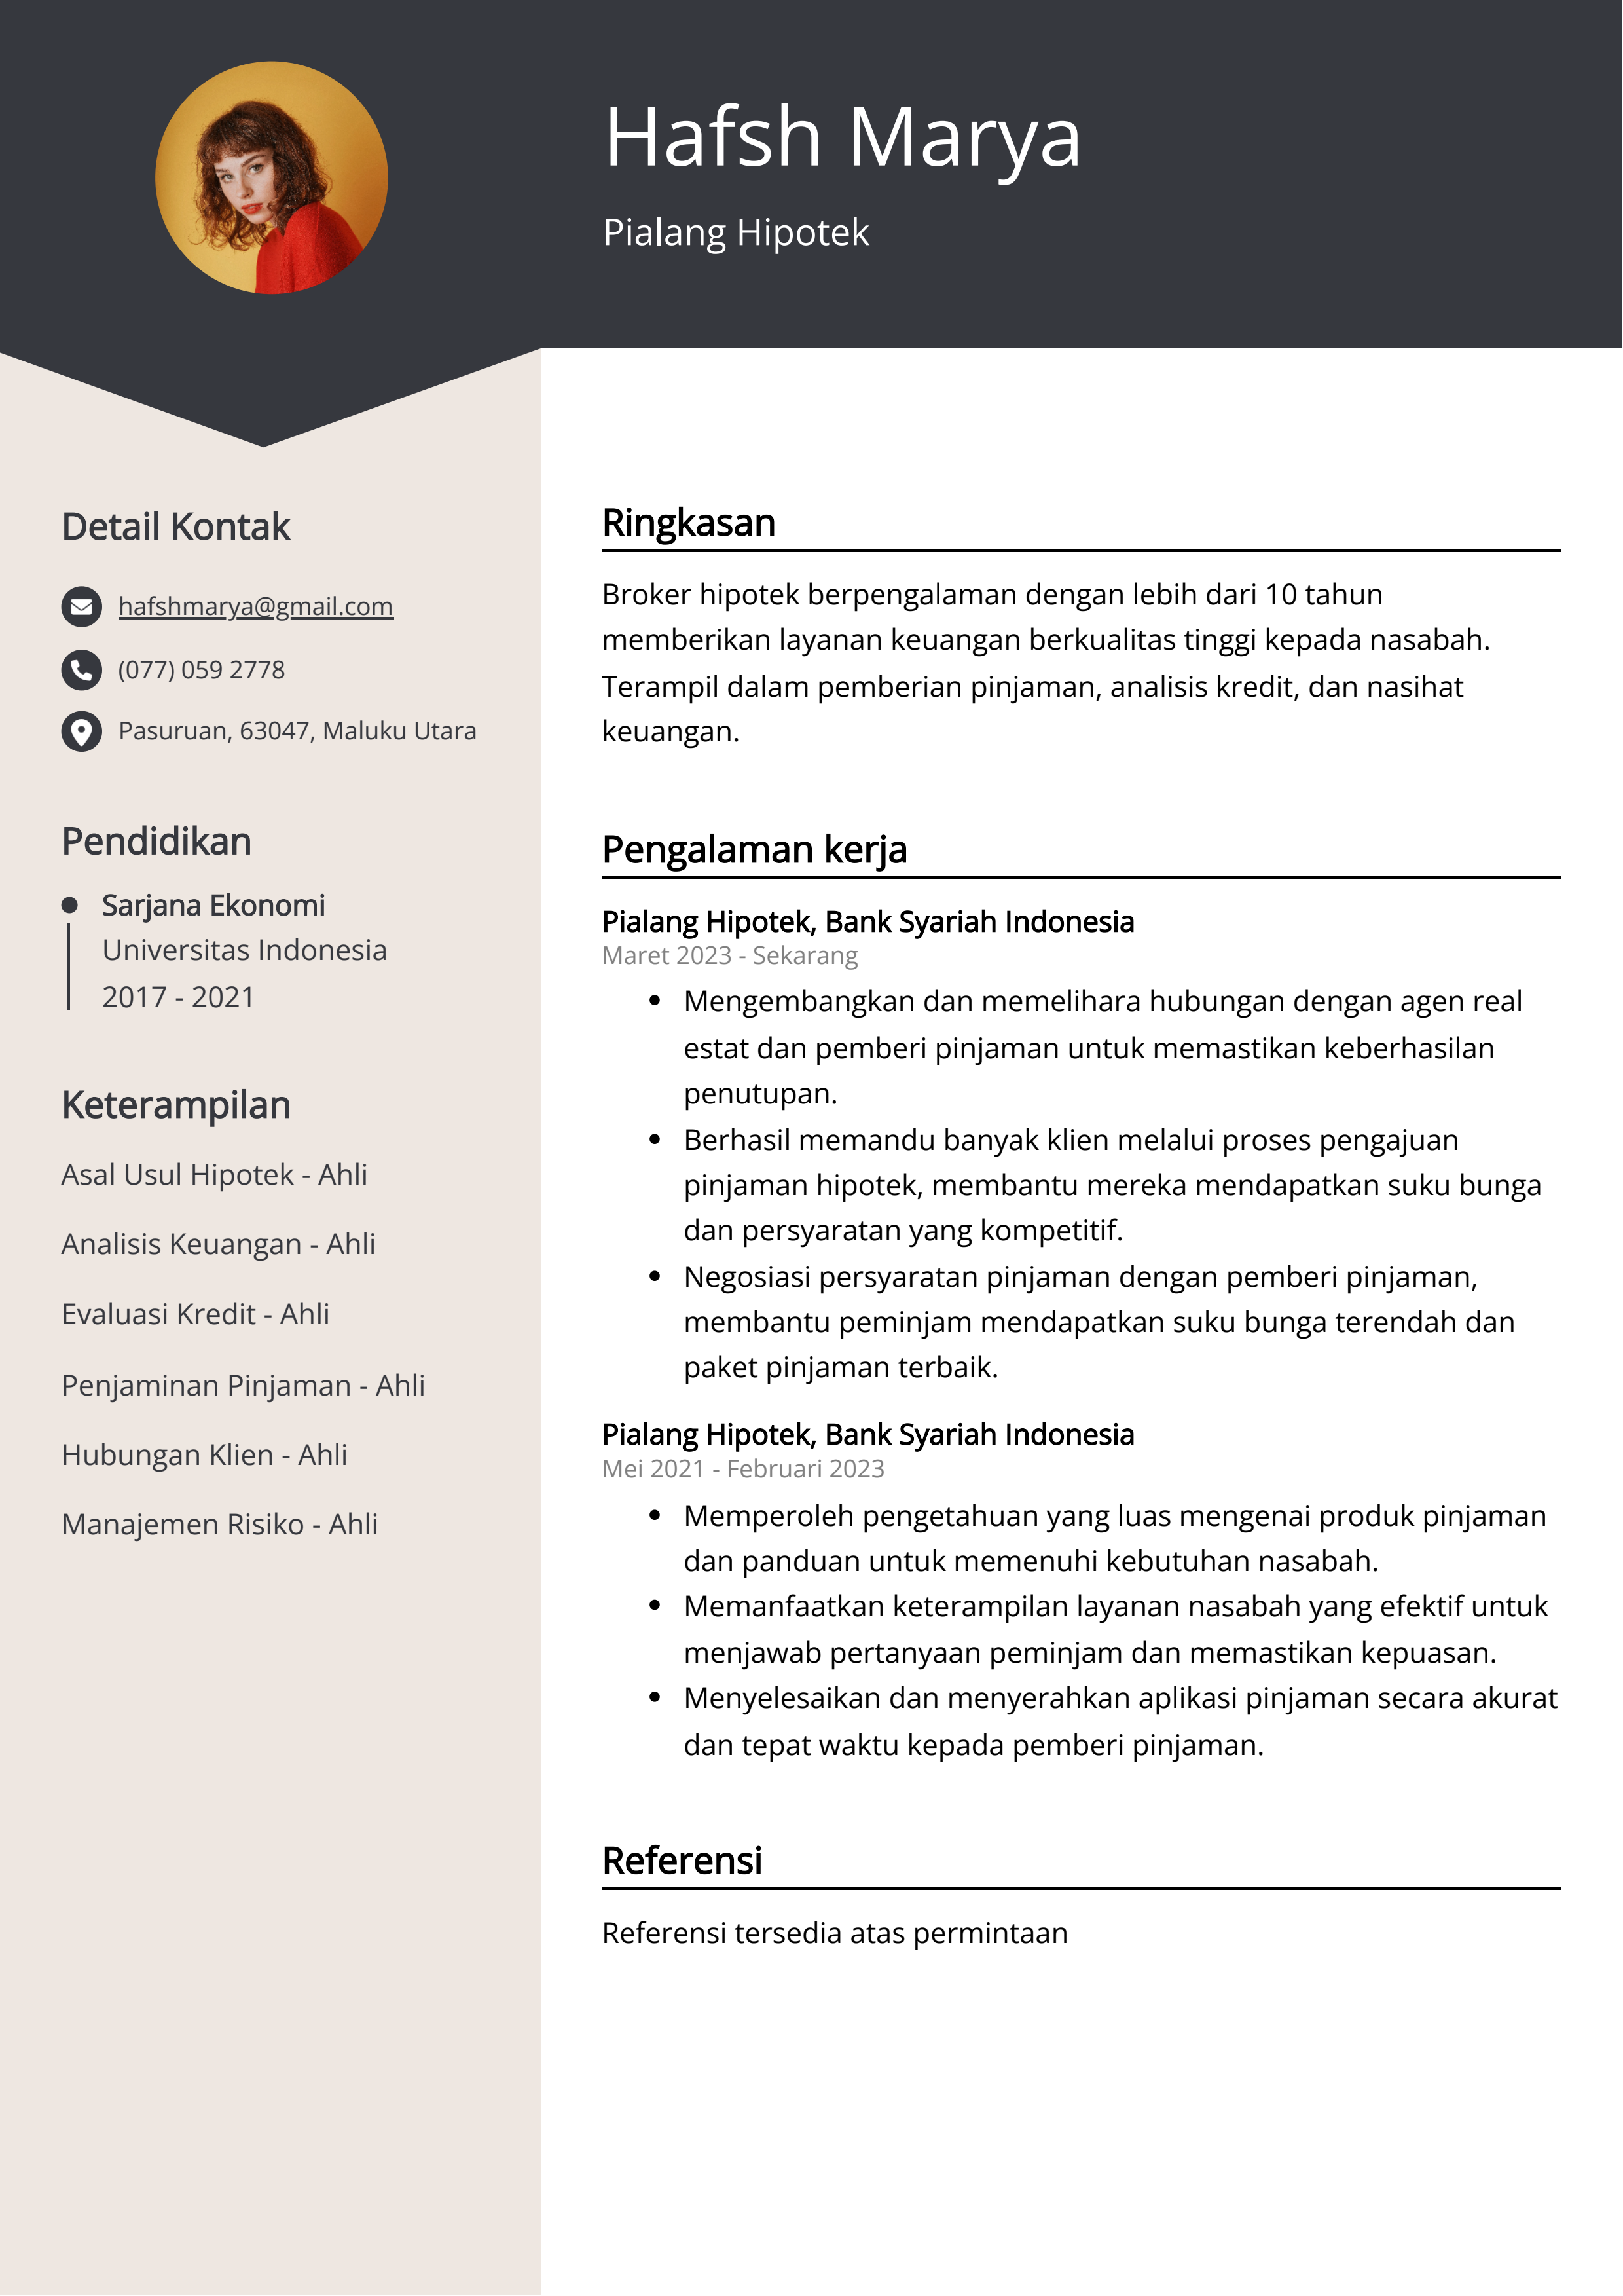 Contoh Resume Pialang Hipotek